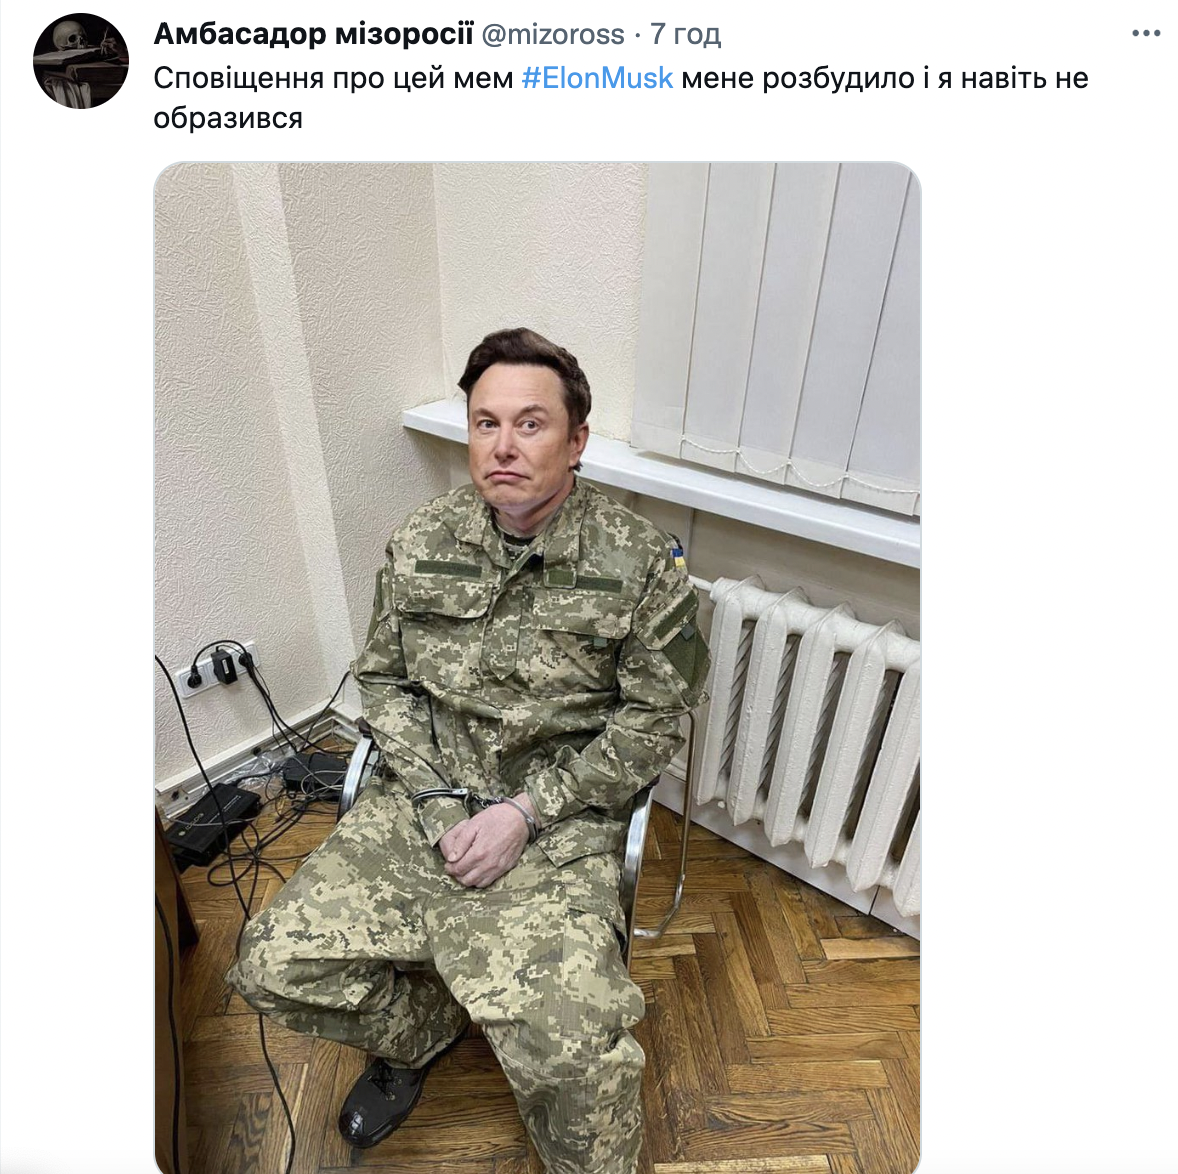 'Ватник року': Мережу підірвали фотожаби через скандал з 'твітами Маска' про війну в Україні